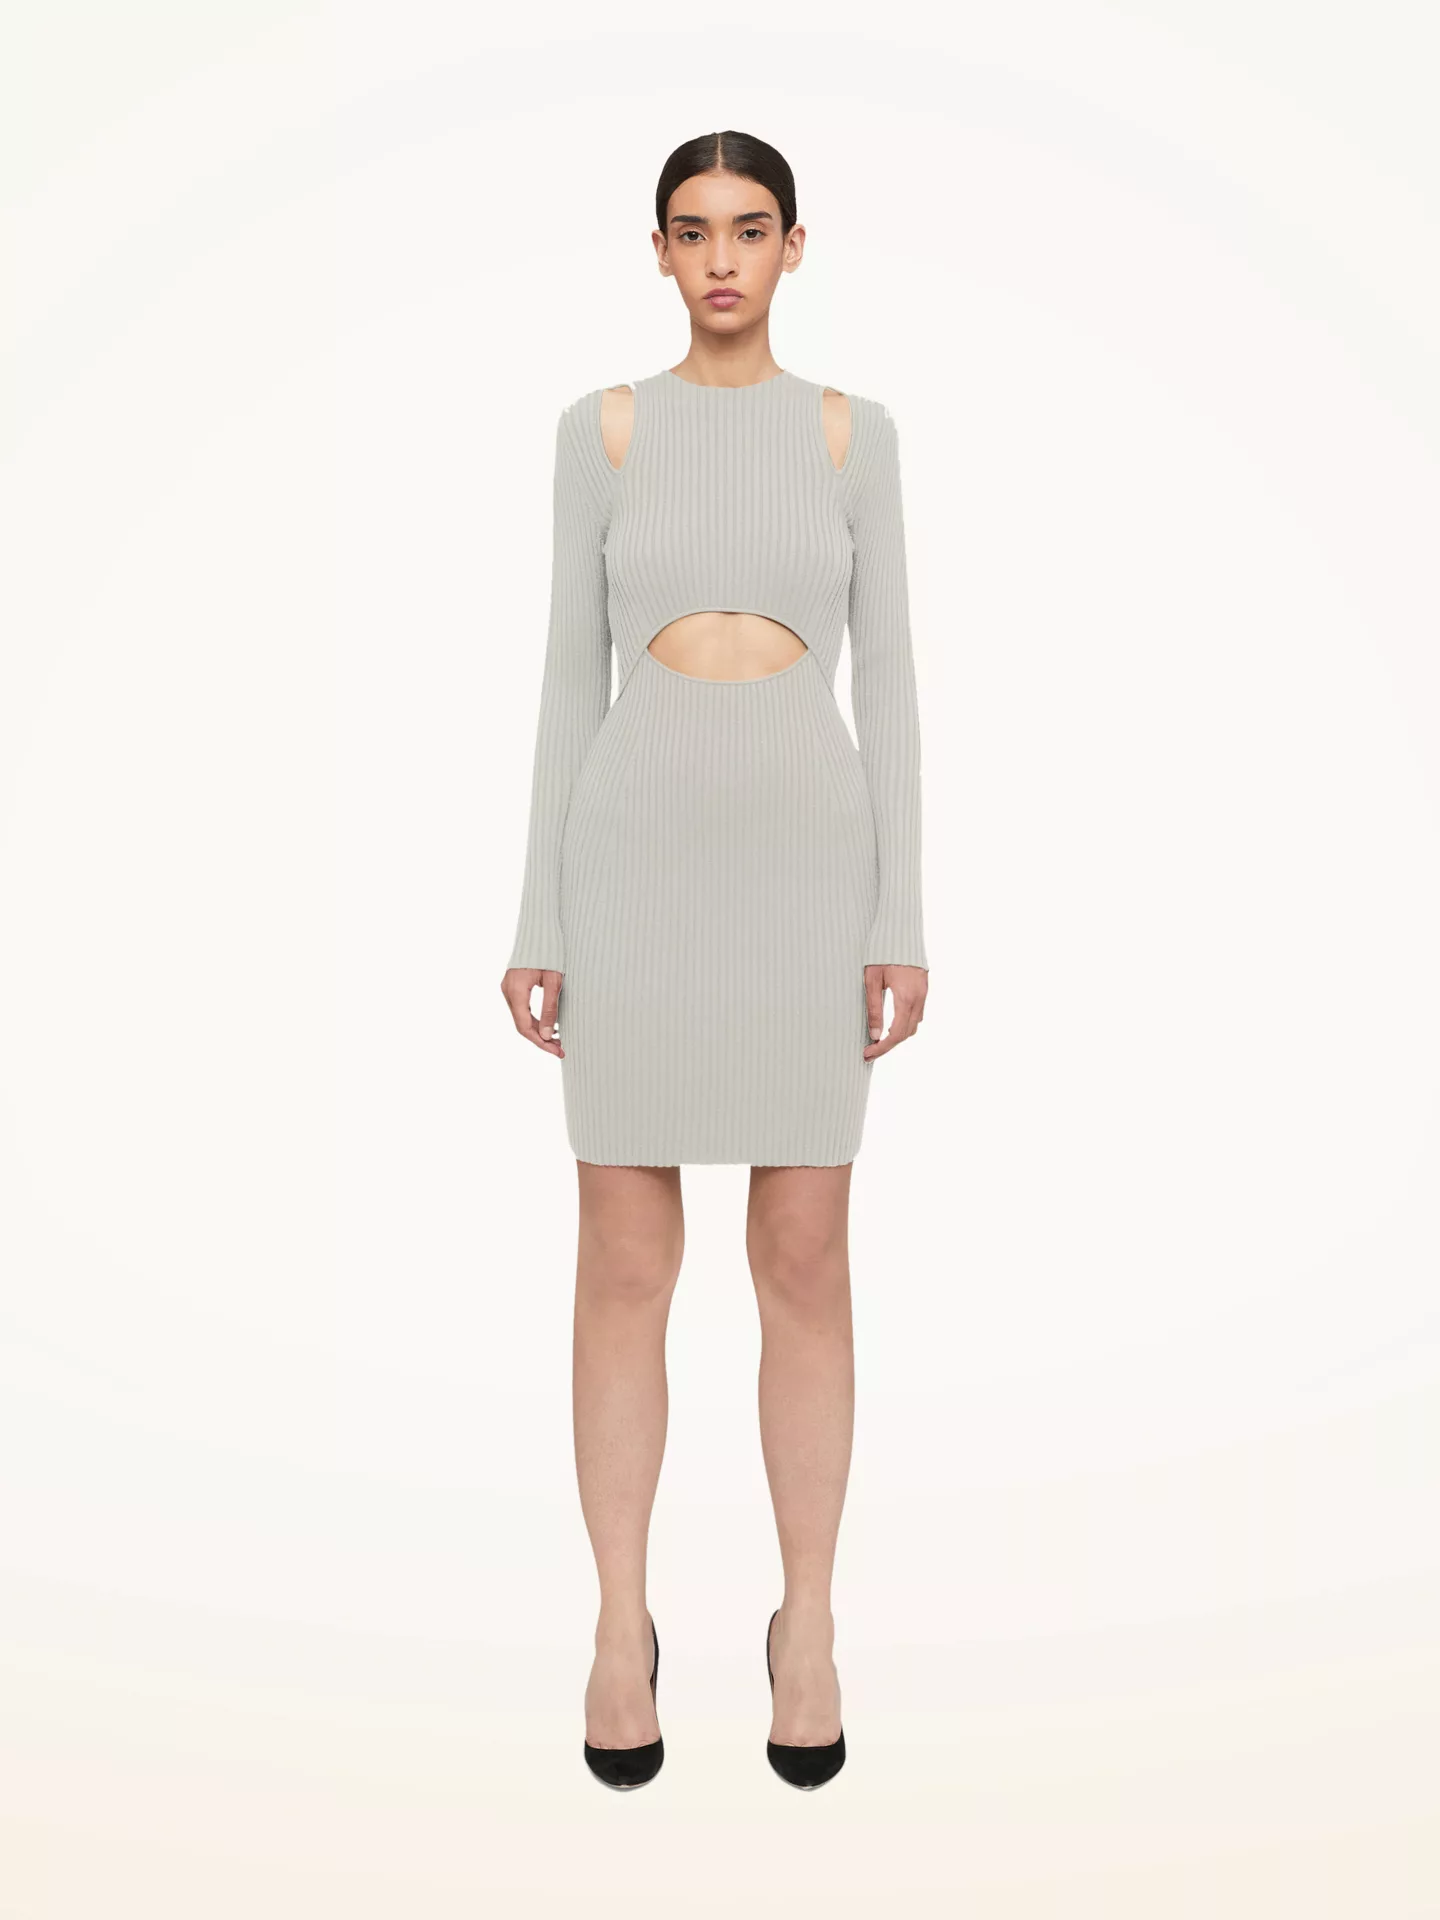 Wolford - Contoured Ribs Dress, Frau, ecrue, Größe: XS günstig online kaufen